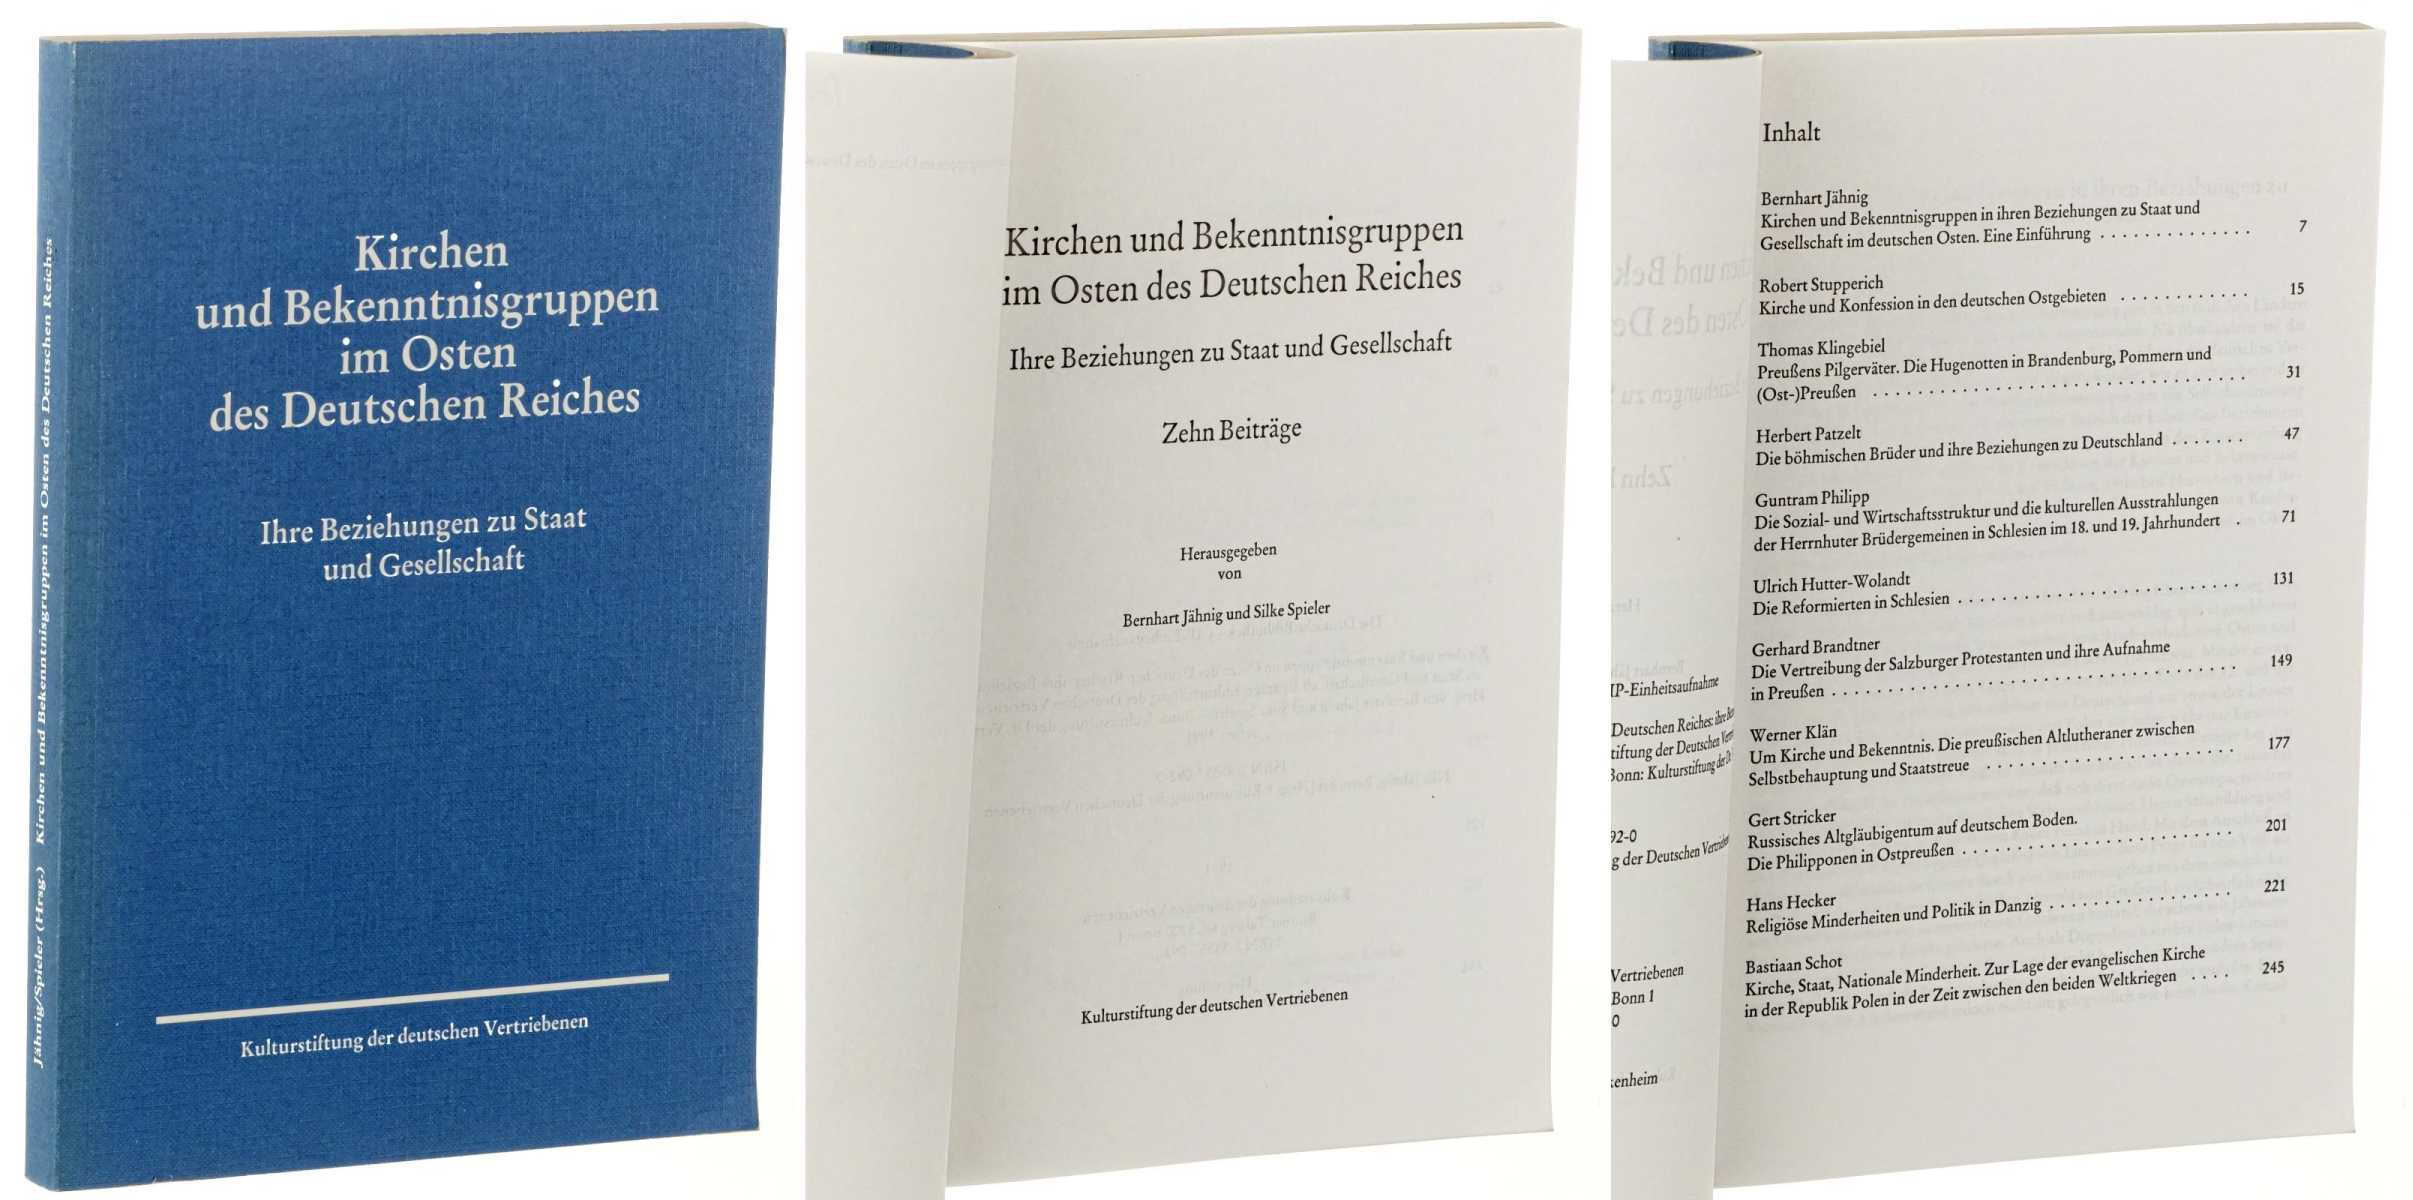 Jähnig, Bernhart / Spieler, Silke (Hg.):  Kirchen und Bekenntnisgruppen im Osten des Deutschen Reiches. Ihre Beziehung zu Staat und Gesellschaft. Zehn Beiträge. 